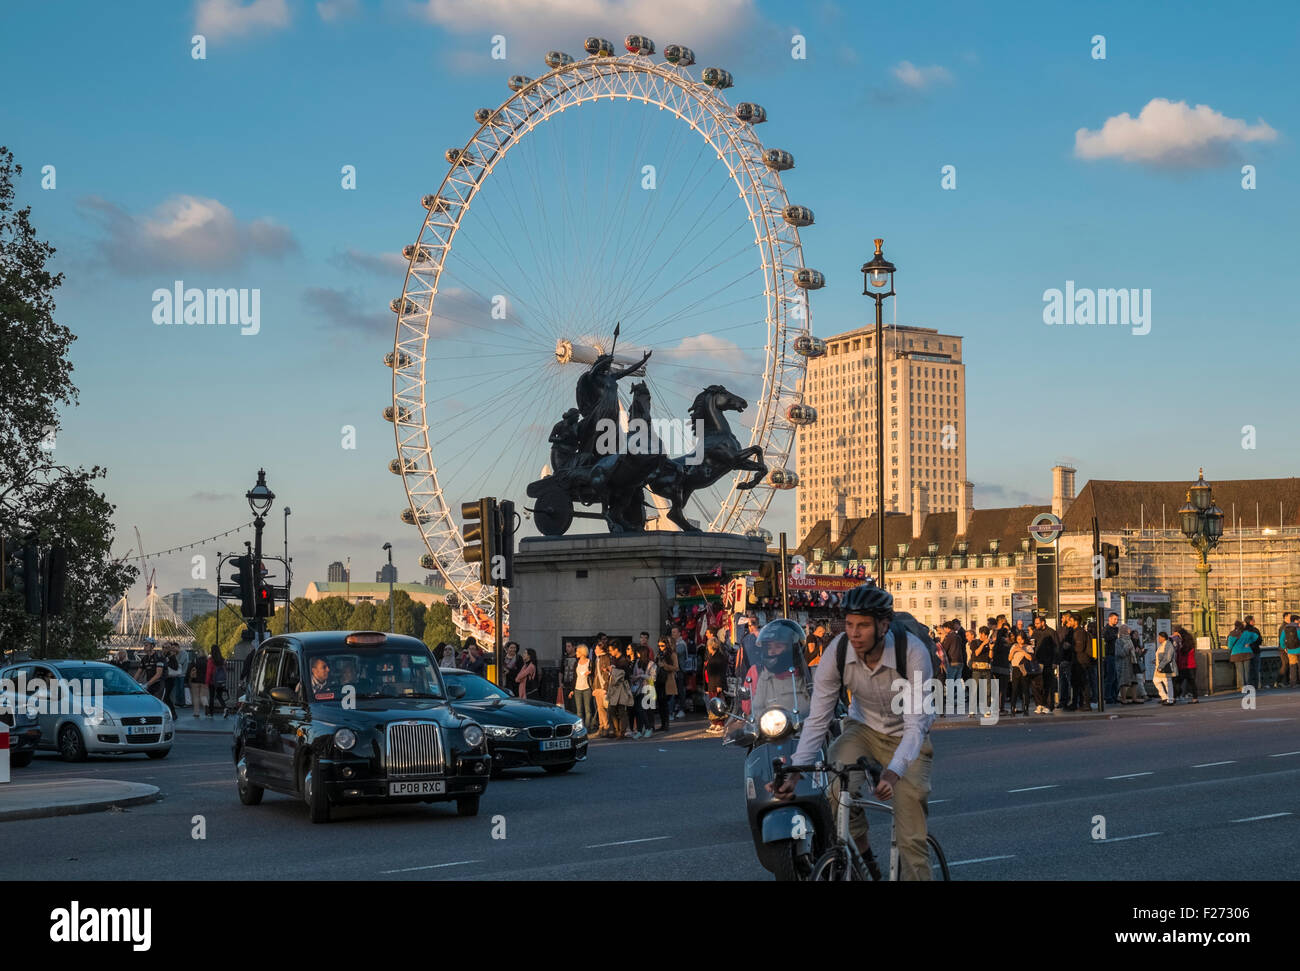 London Eye, visto desde el punto turístico popular cerca de Westminster Bridge, Londres, Inglaterra Foto de stock